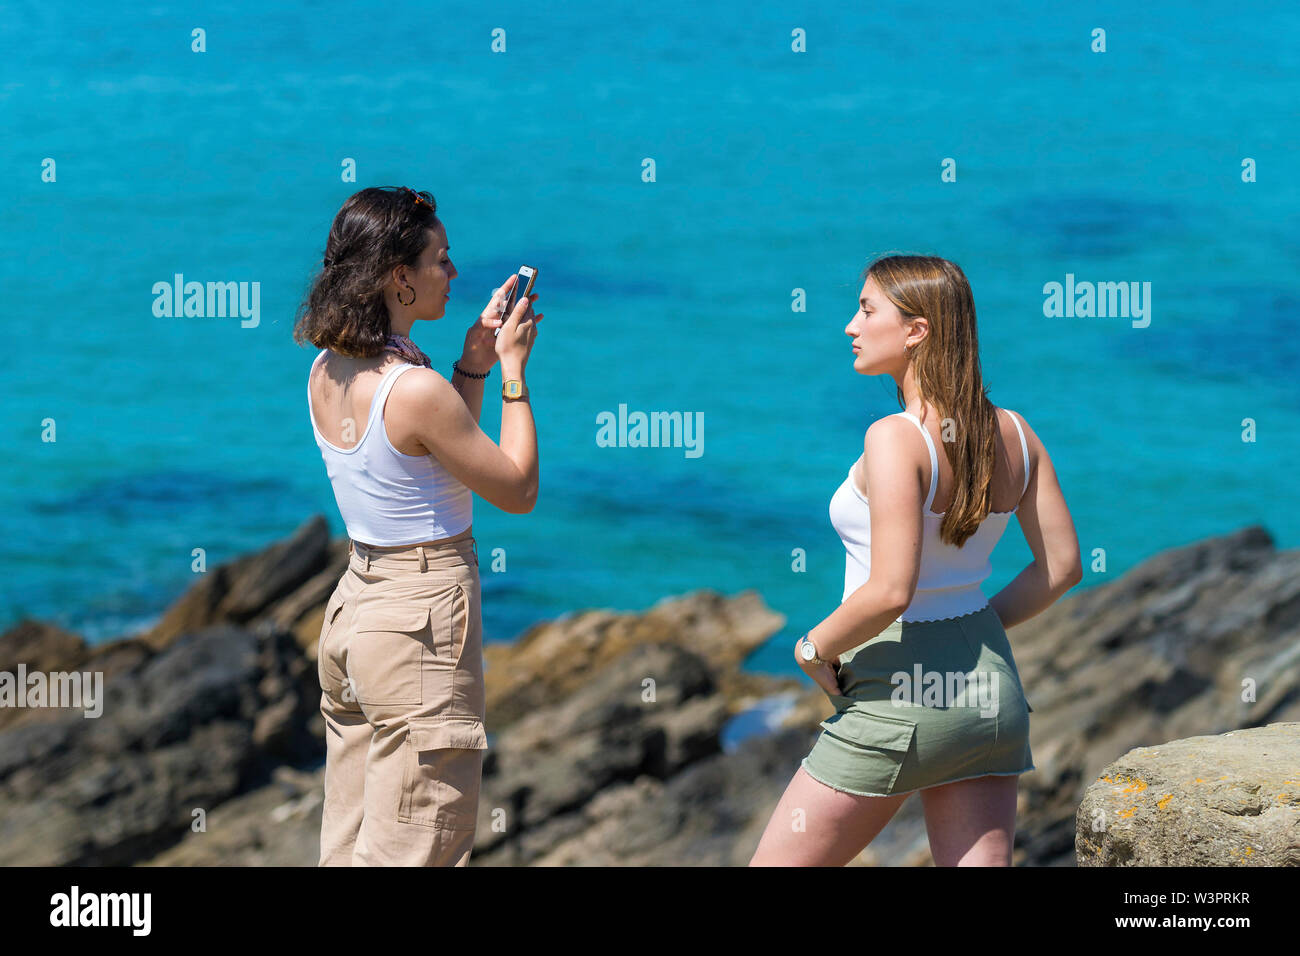 Eine junge Frau eine andere junge Frauen fotografieren über ein Mobiltelefon mit einem türkisblauen Meer im Hintergrund. Stockfoto